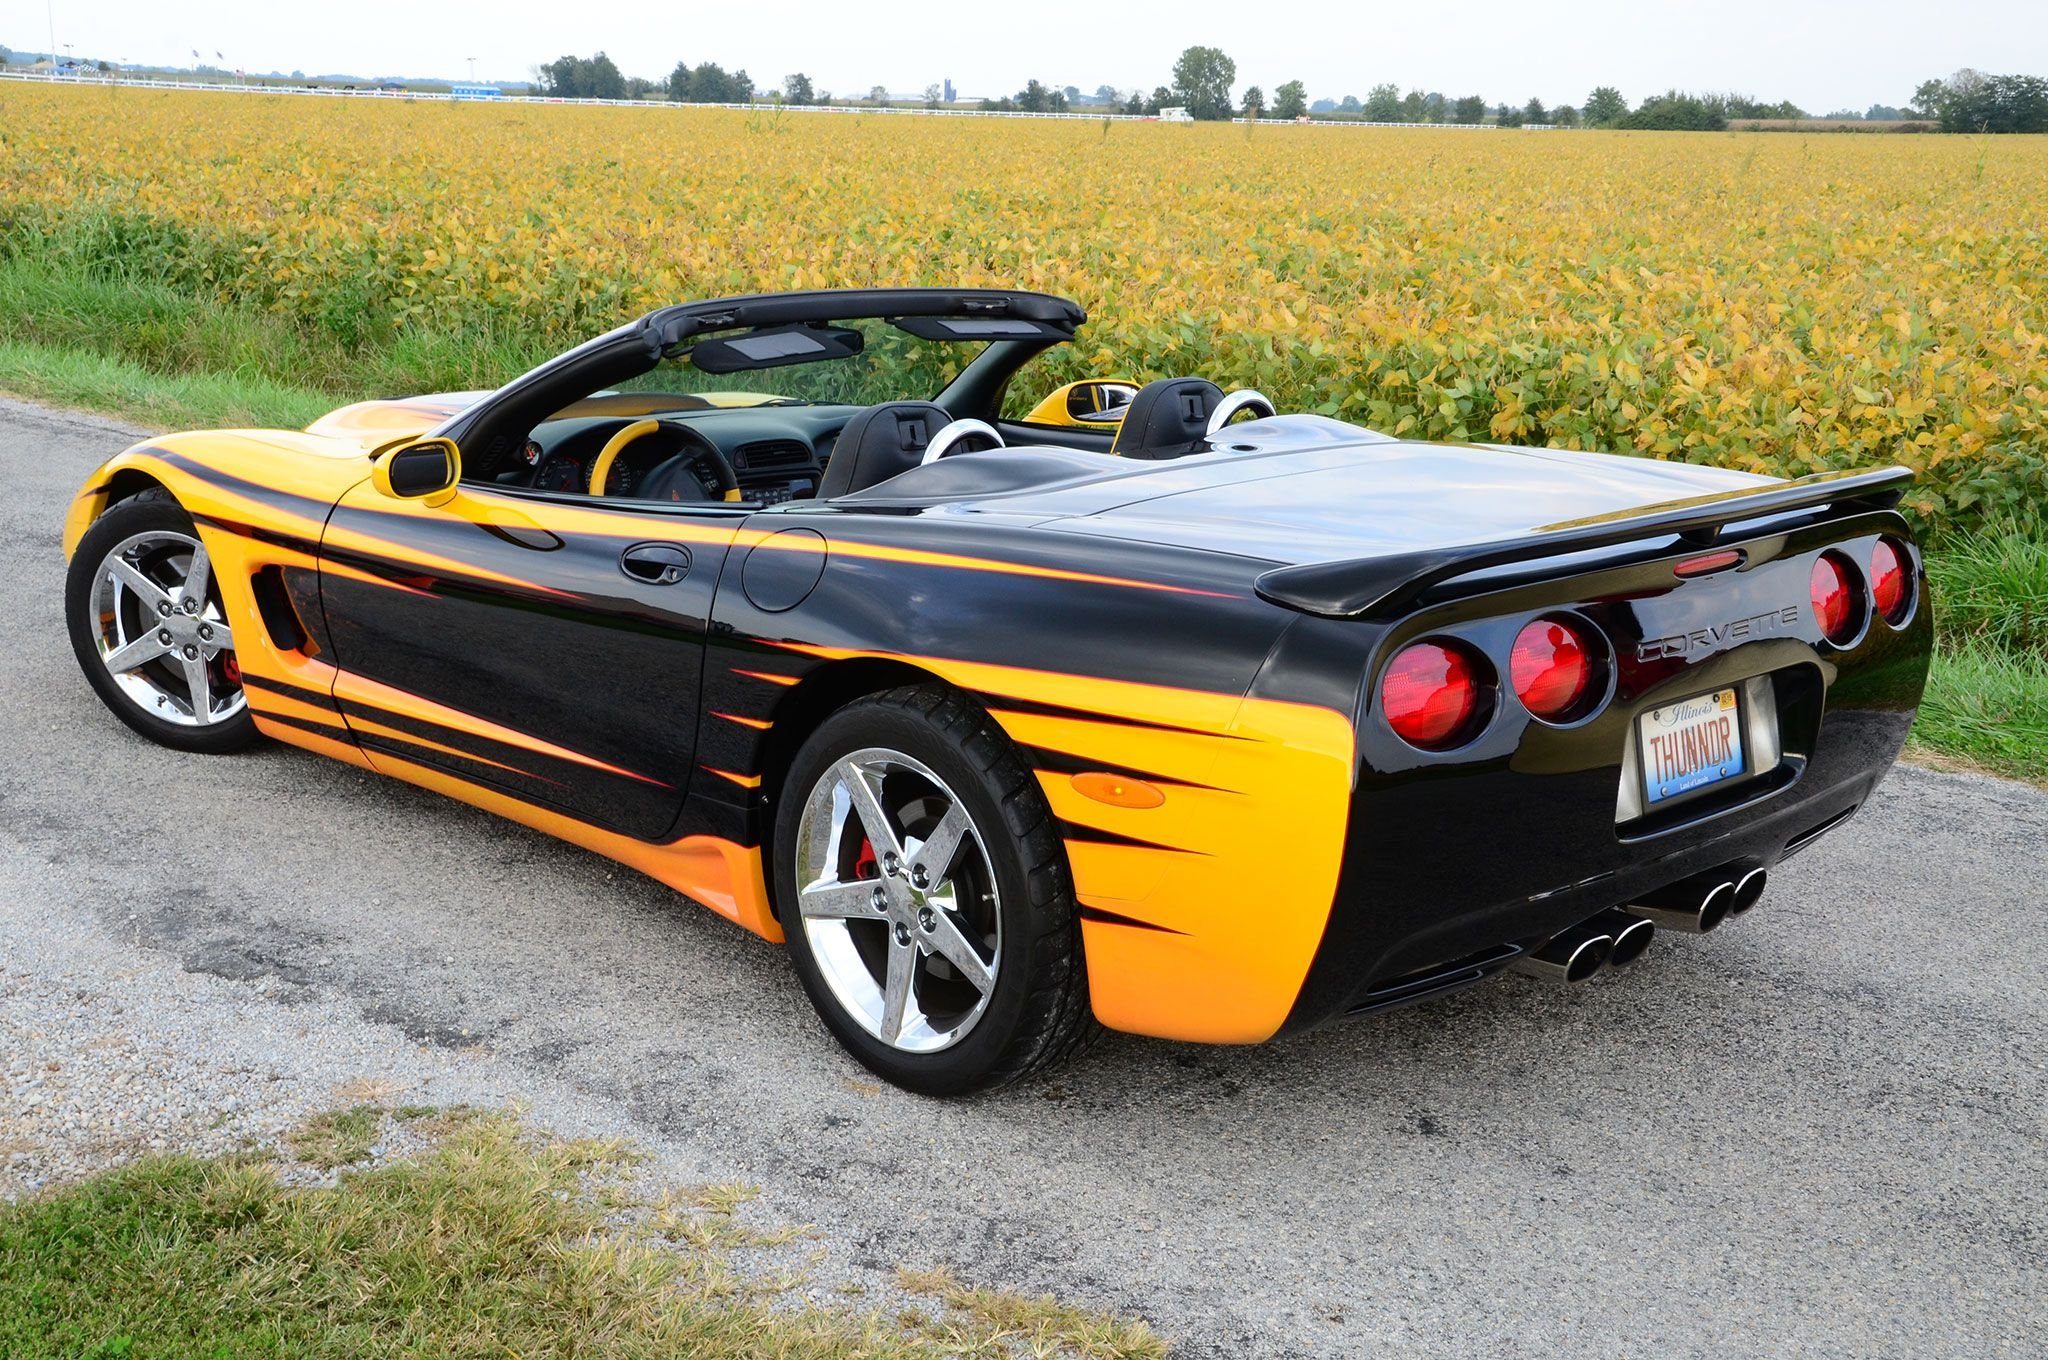 2000 Corvette Wallpapers